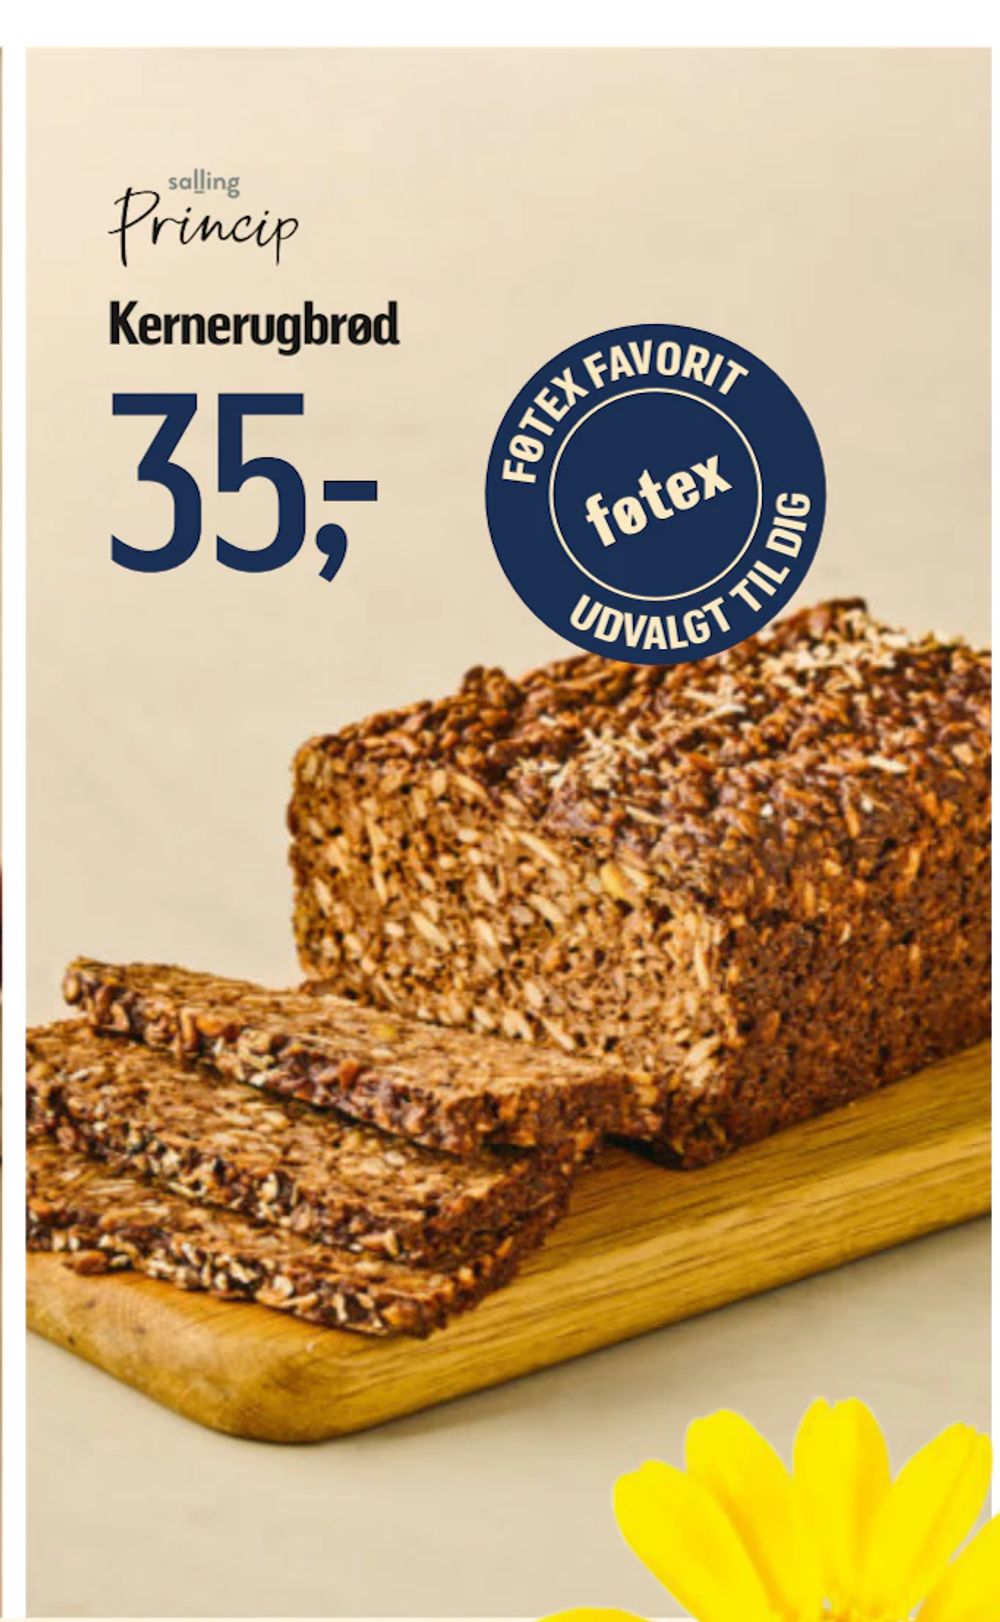 Tilbud på Kernerugbrød fra føtex til 35 kr.